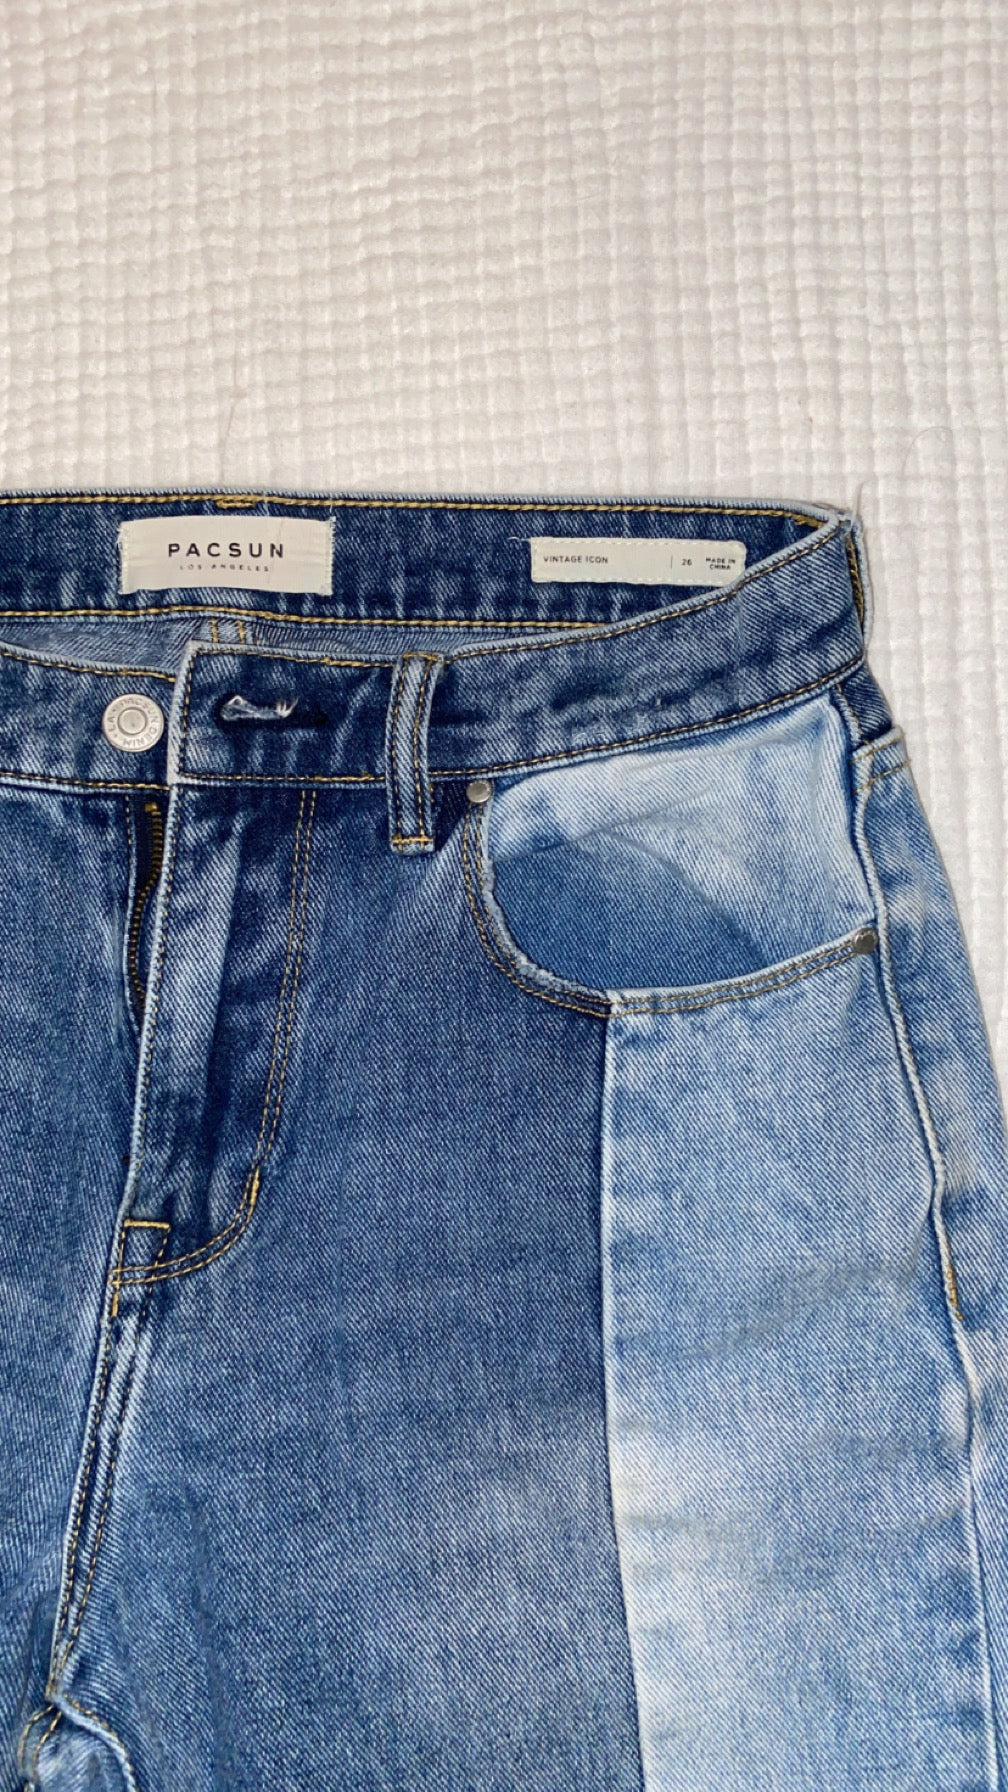 Pacsun Retro Denim Jeans - Women’s S (26)